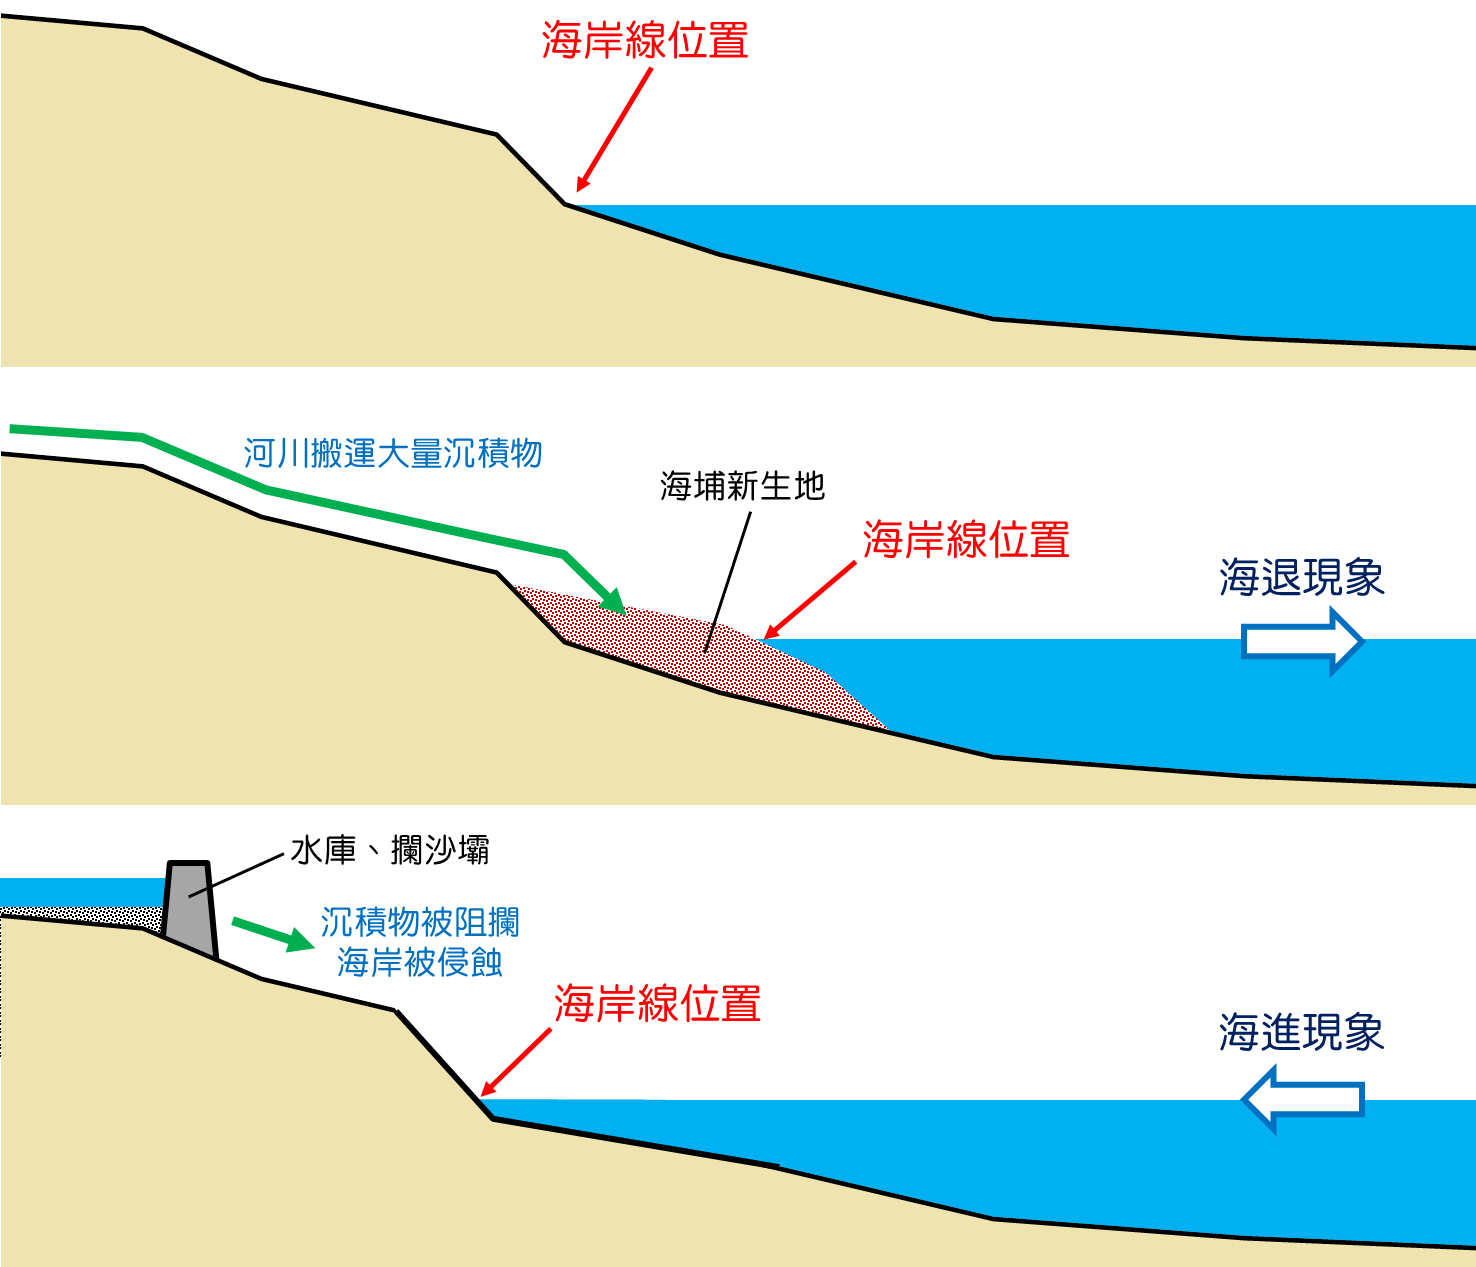 沉積物於河口處堆積所形成的海岸線會有海進和海退的變化